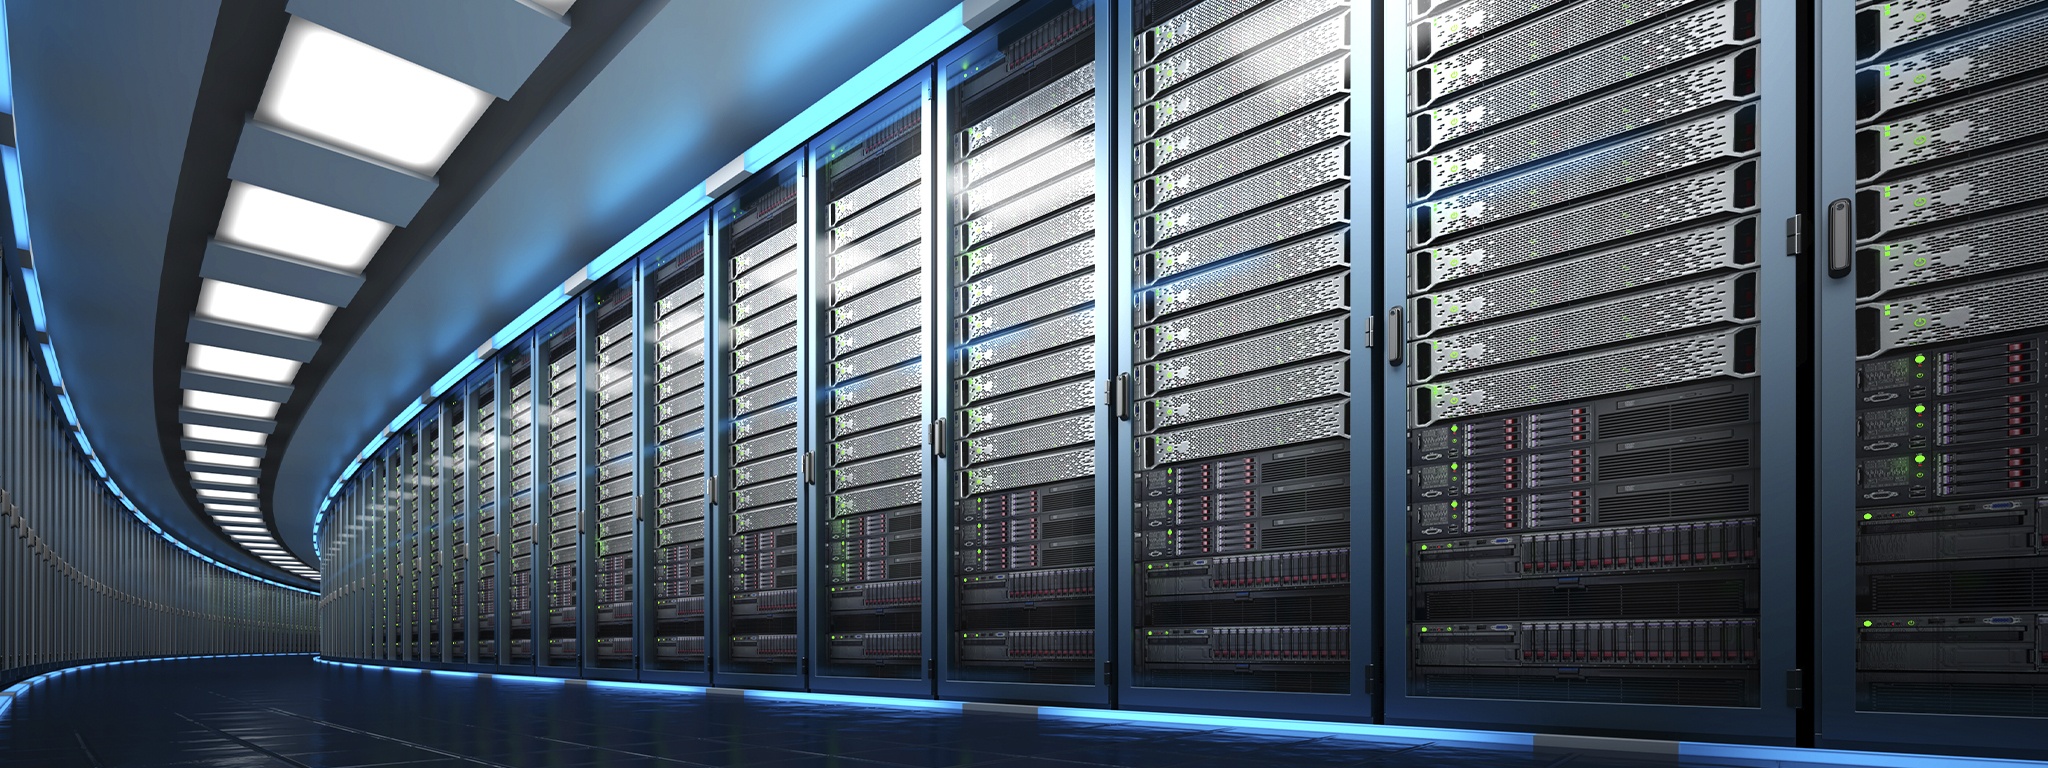 renderização 3D de um data center mostrando uma grande sala de servidores com uma longa fila de unidades de rack de servidor